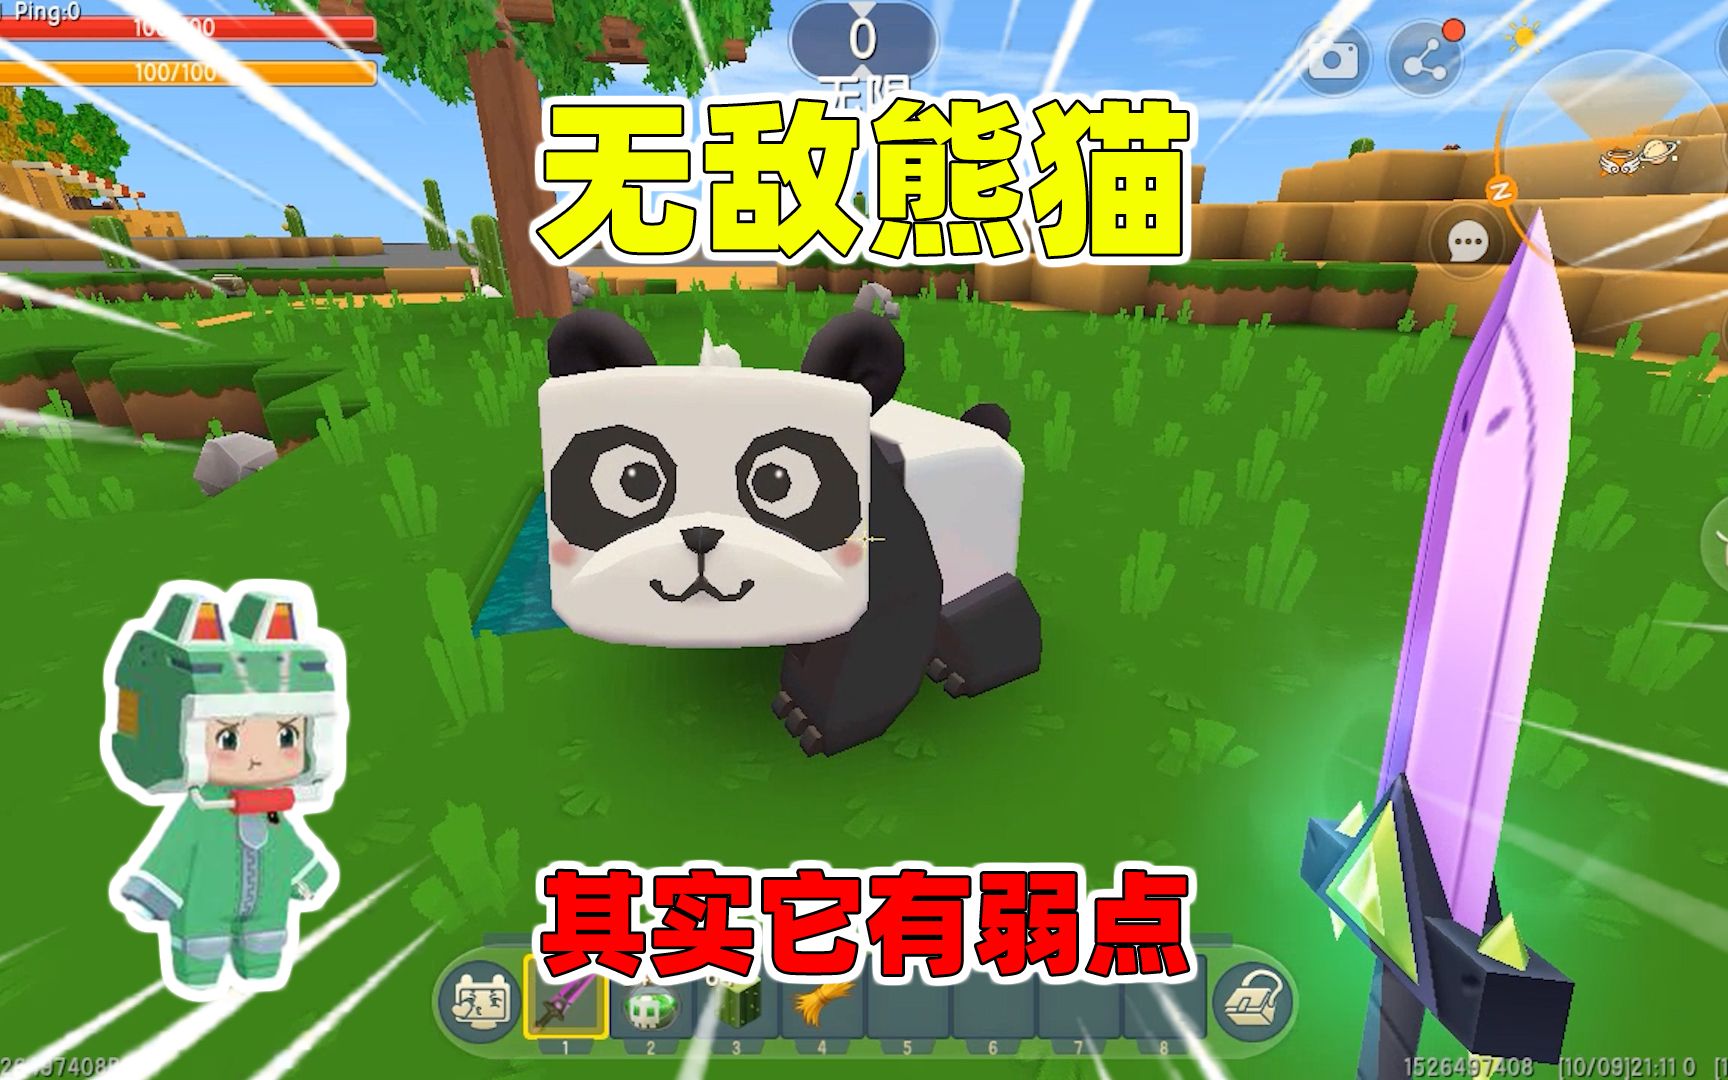 迷你世界:熊猫是不是无敌的?连岩浆毒水都不怕,却怕野人的肘子